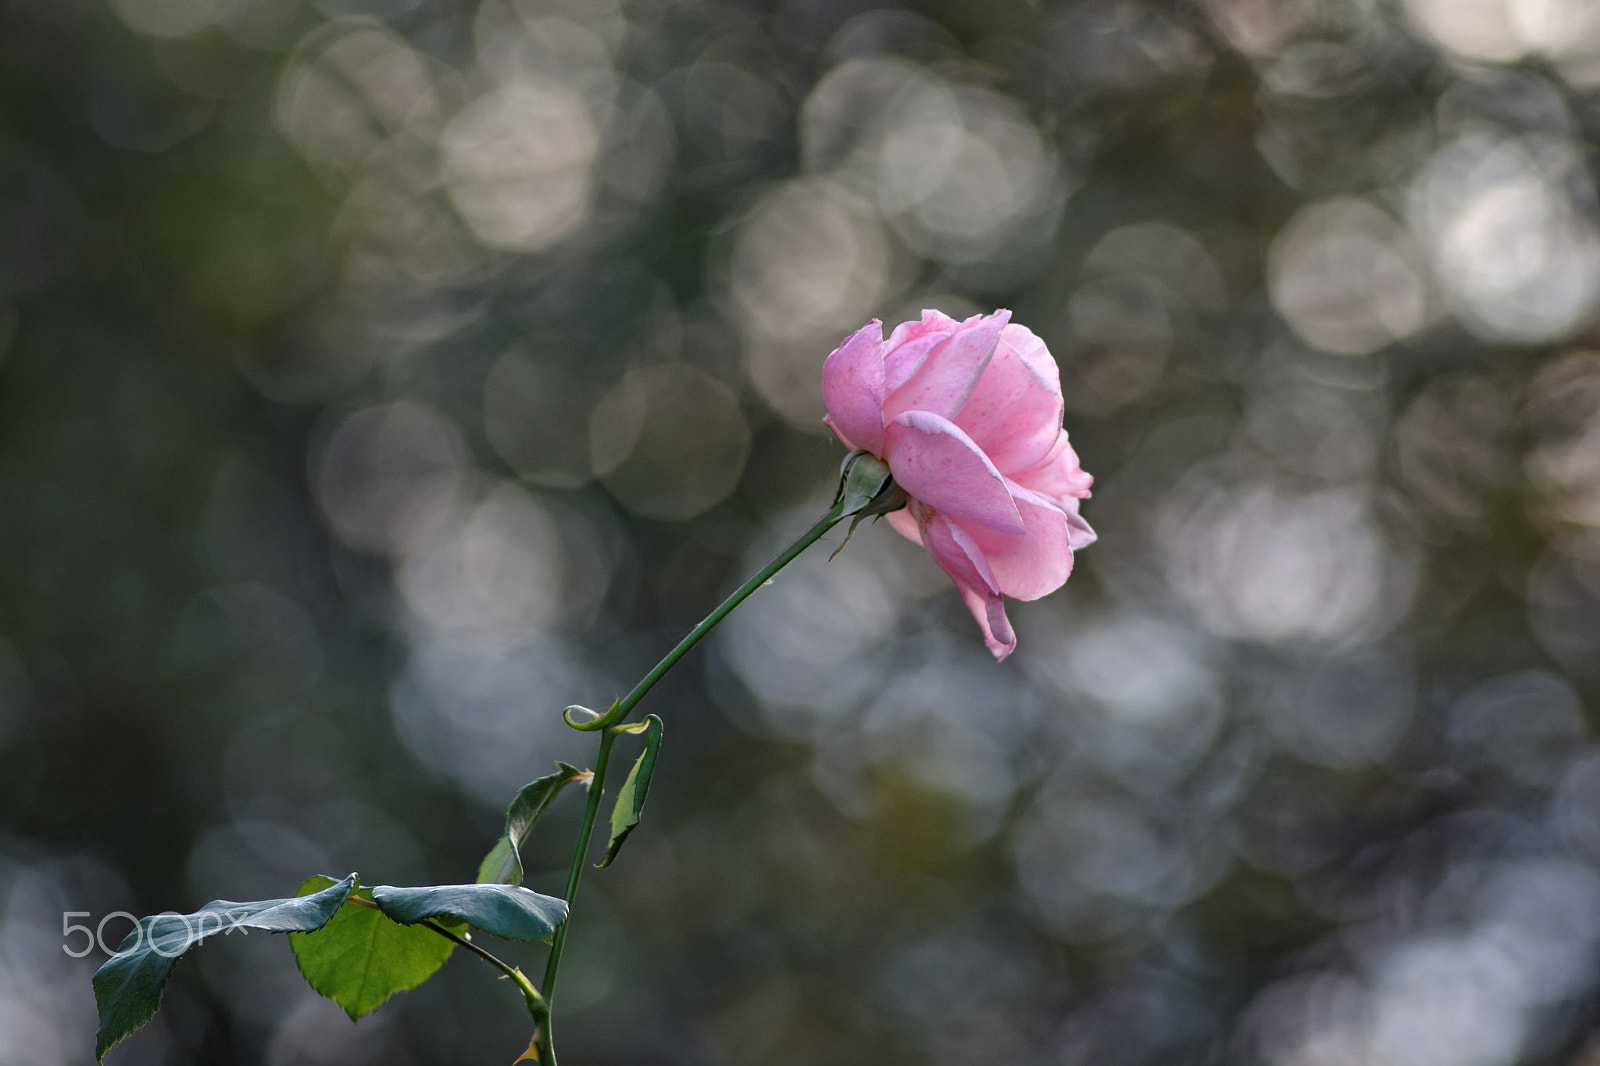 Nikon D7100 sample photo. Pink rose photography